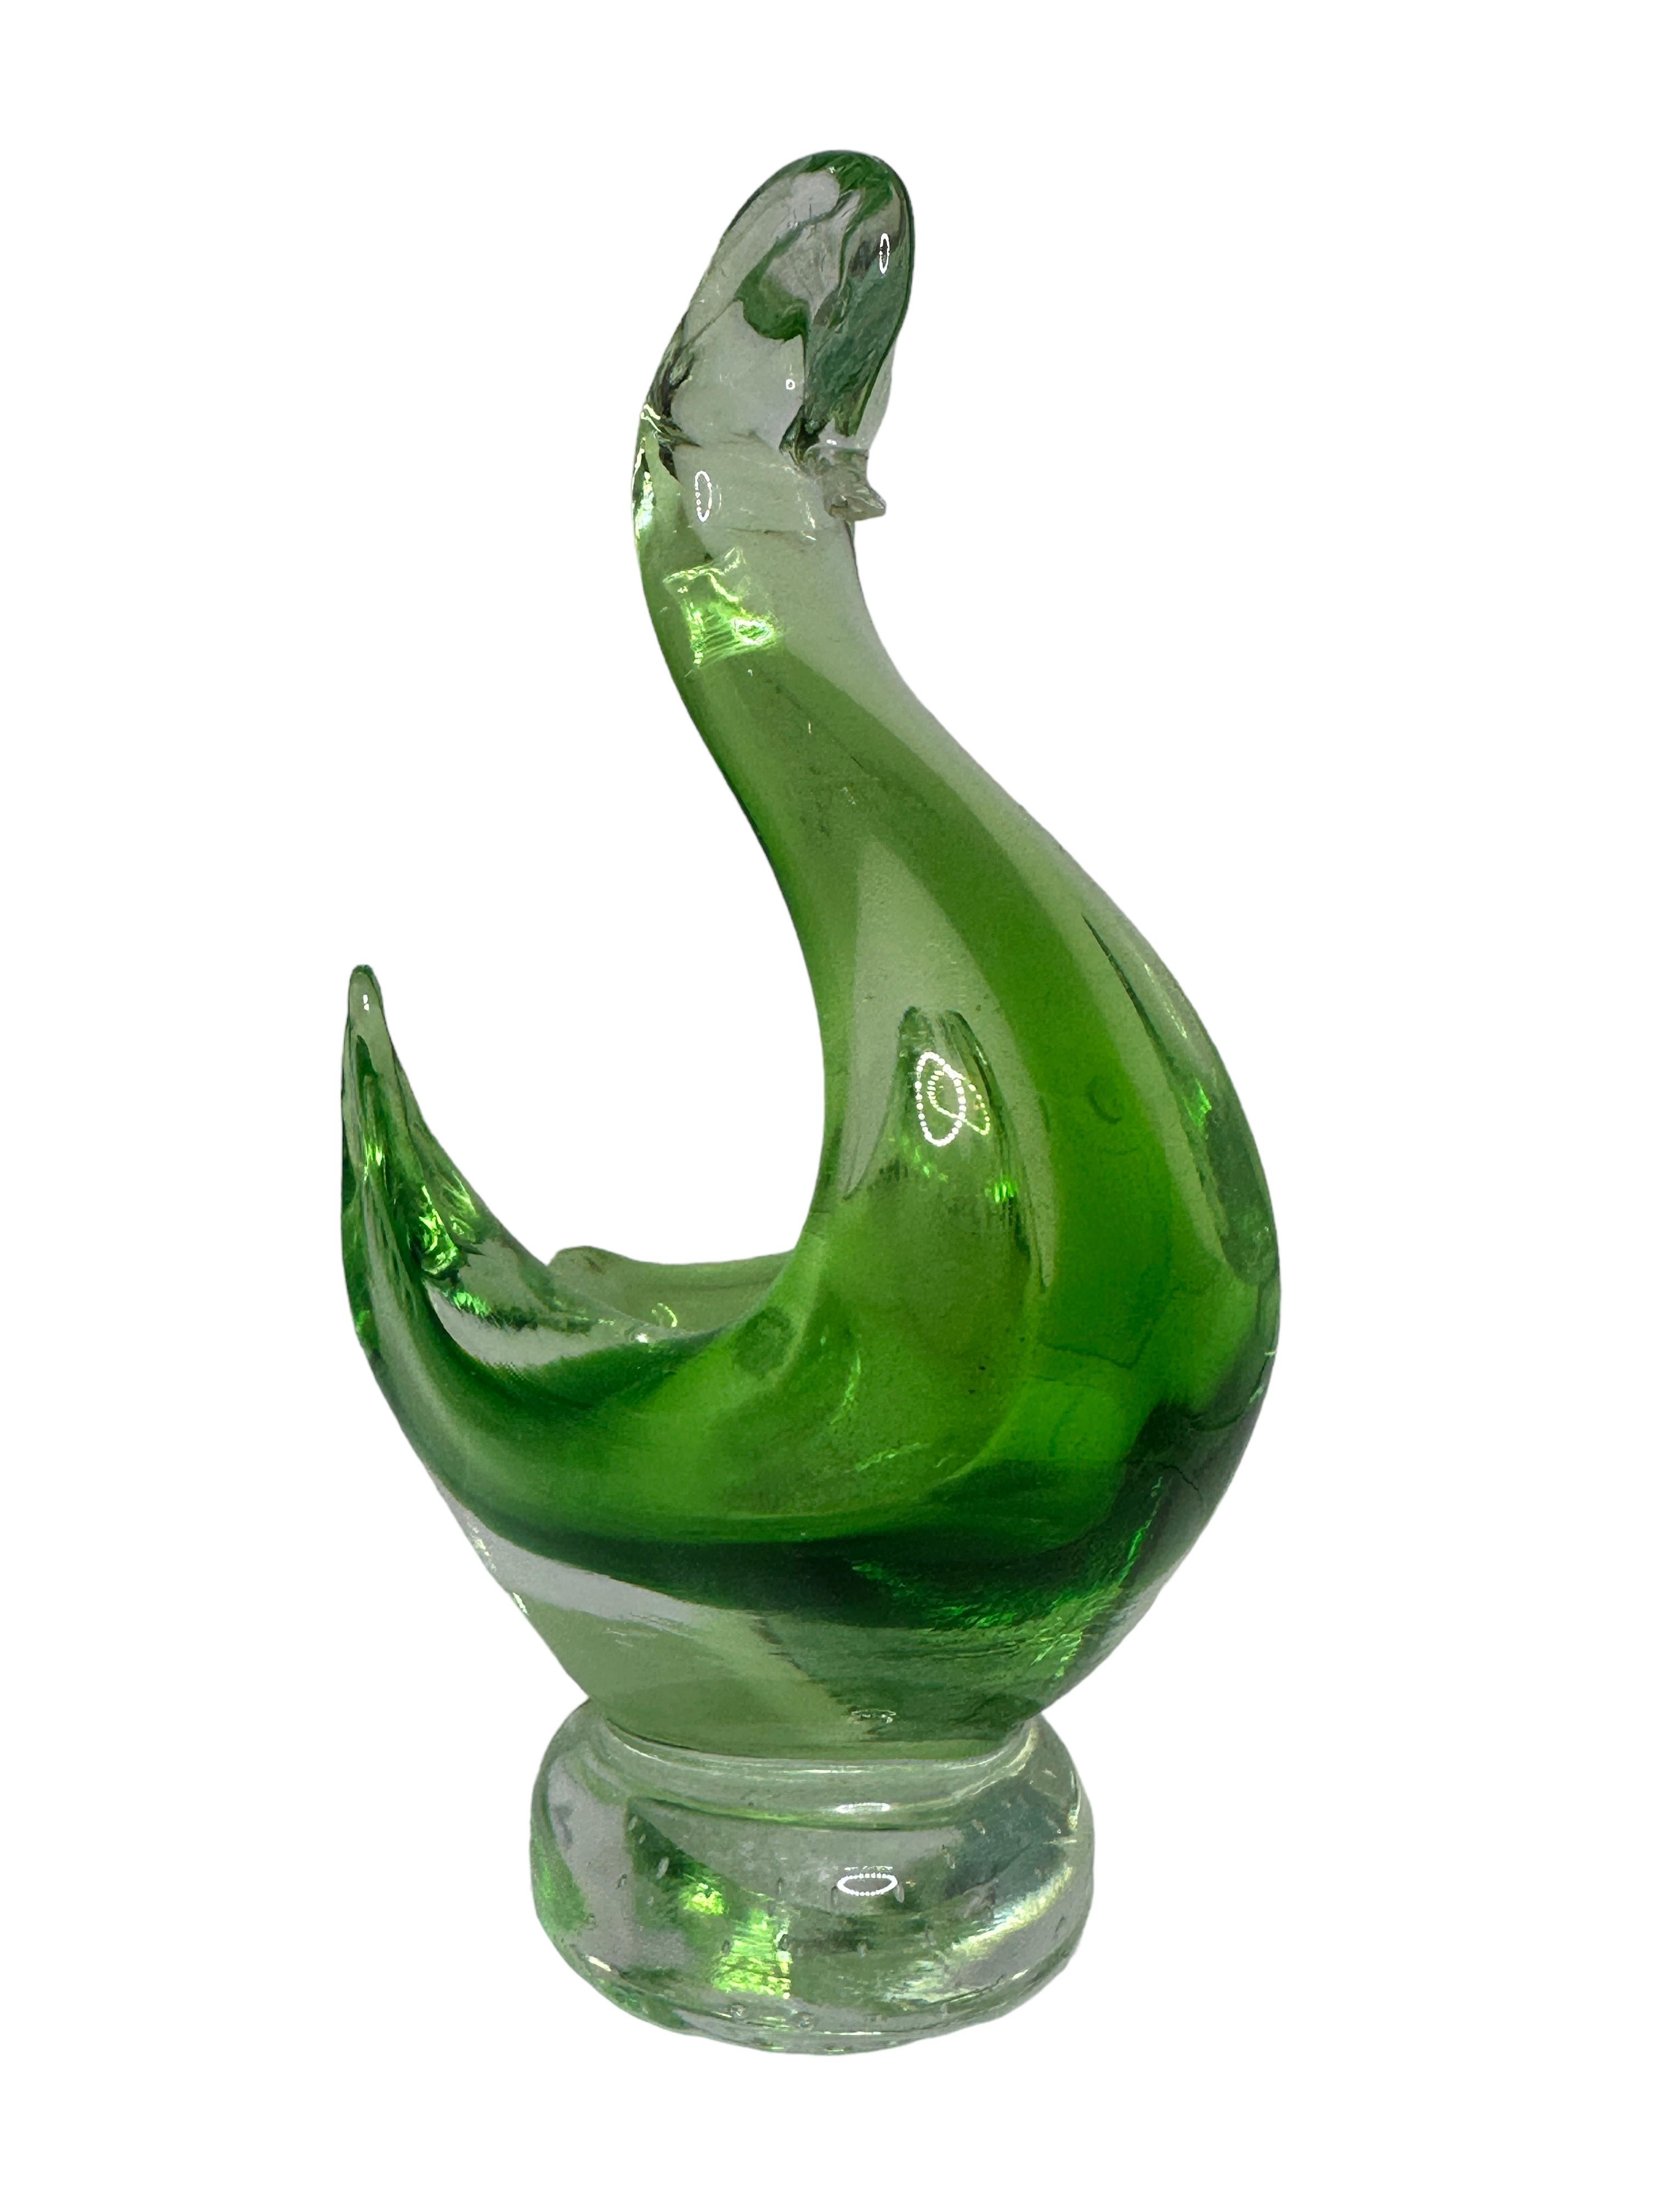 Sculpture en verre de Murano représentant un cygne en clair et vert. Une belle addition à n'importe quelle pièce. Fabriqué à Venise en Italie dans les années 1980. Trouvé dans une vente immobilière à Vienne, en Autriche.